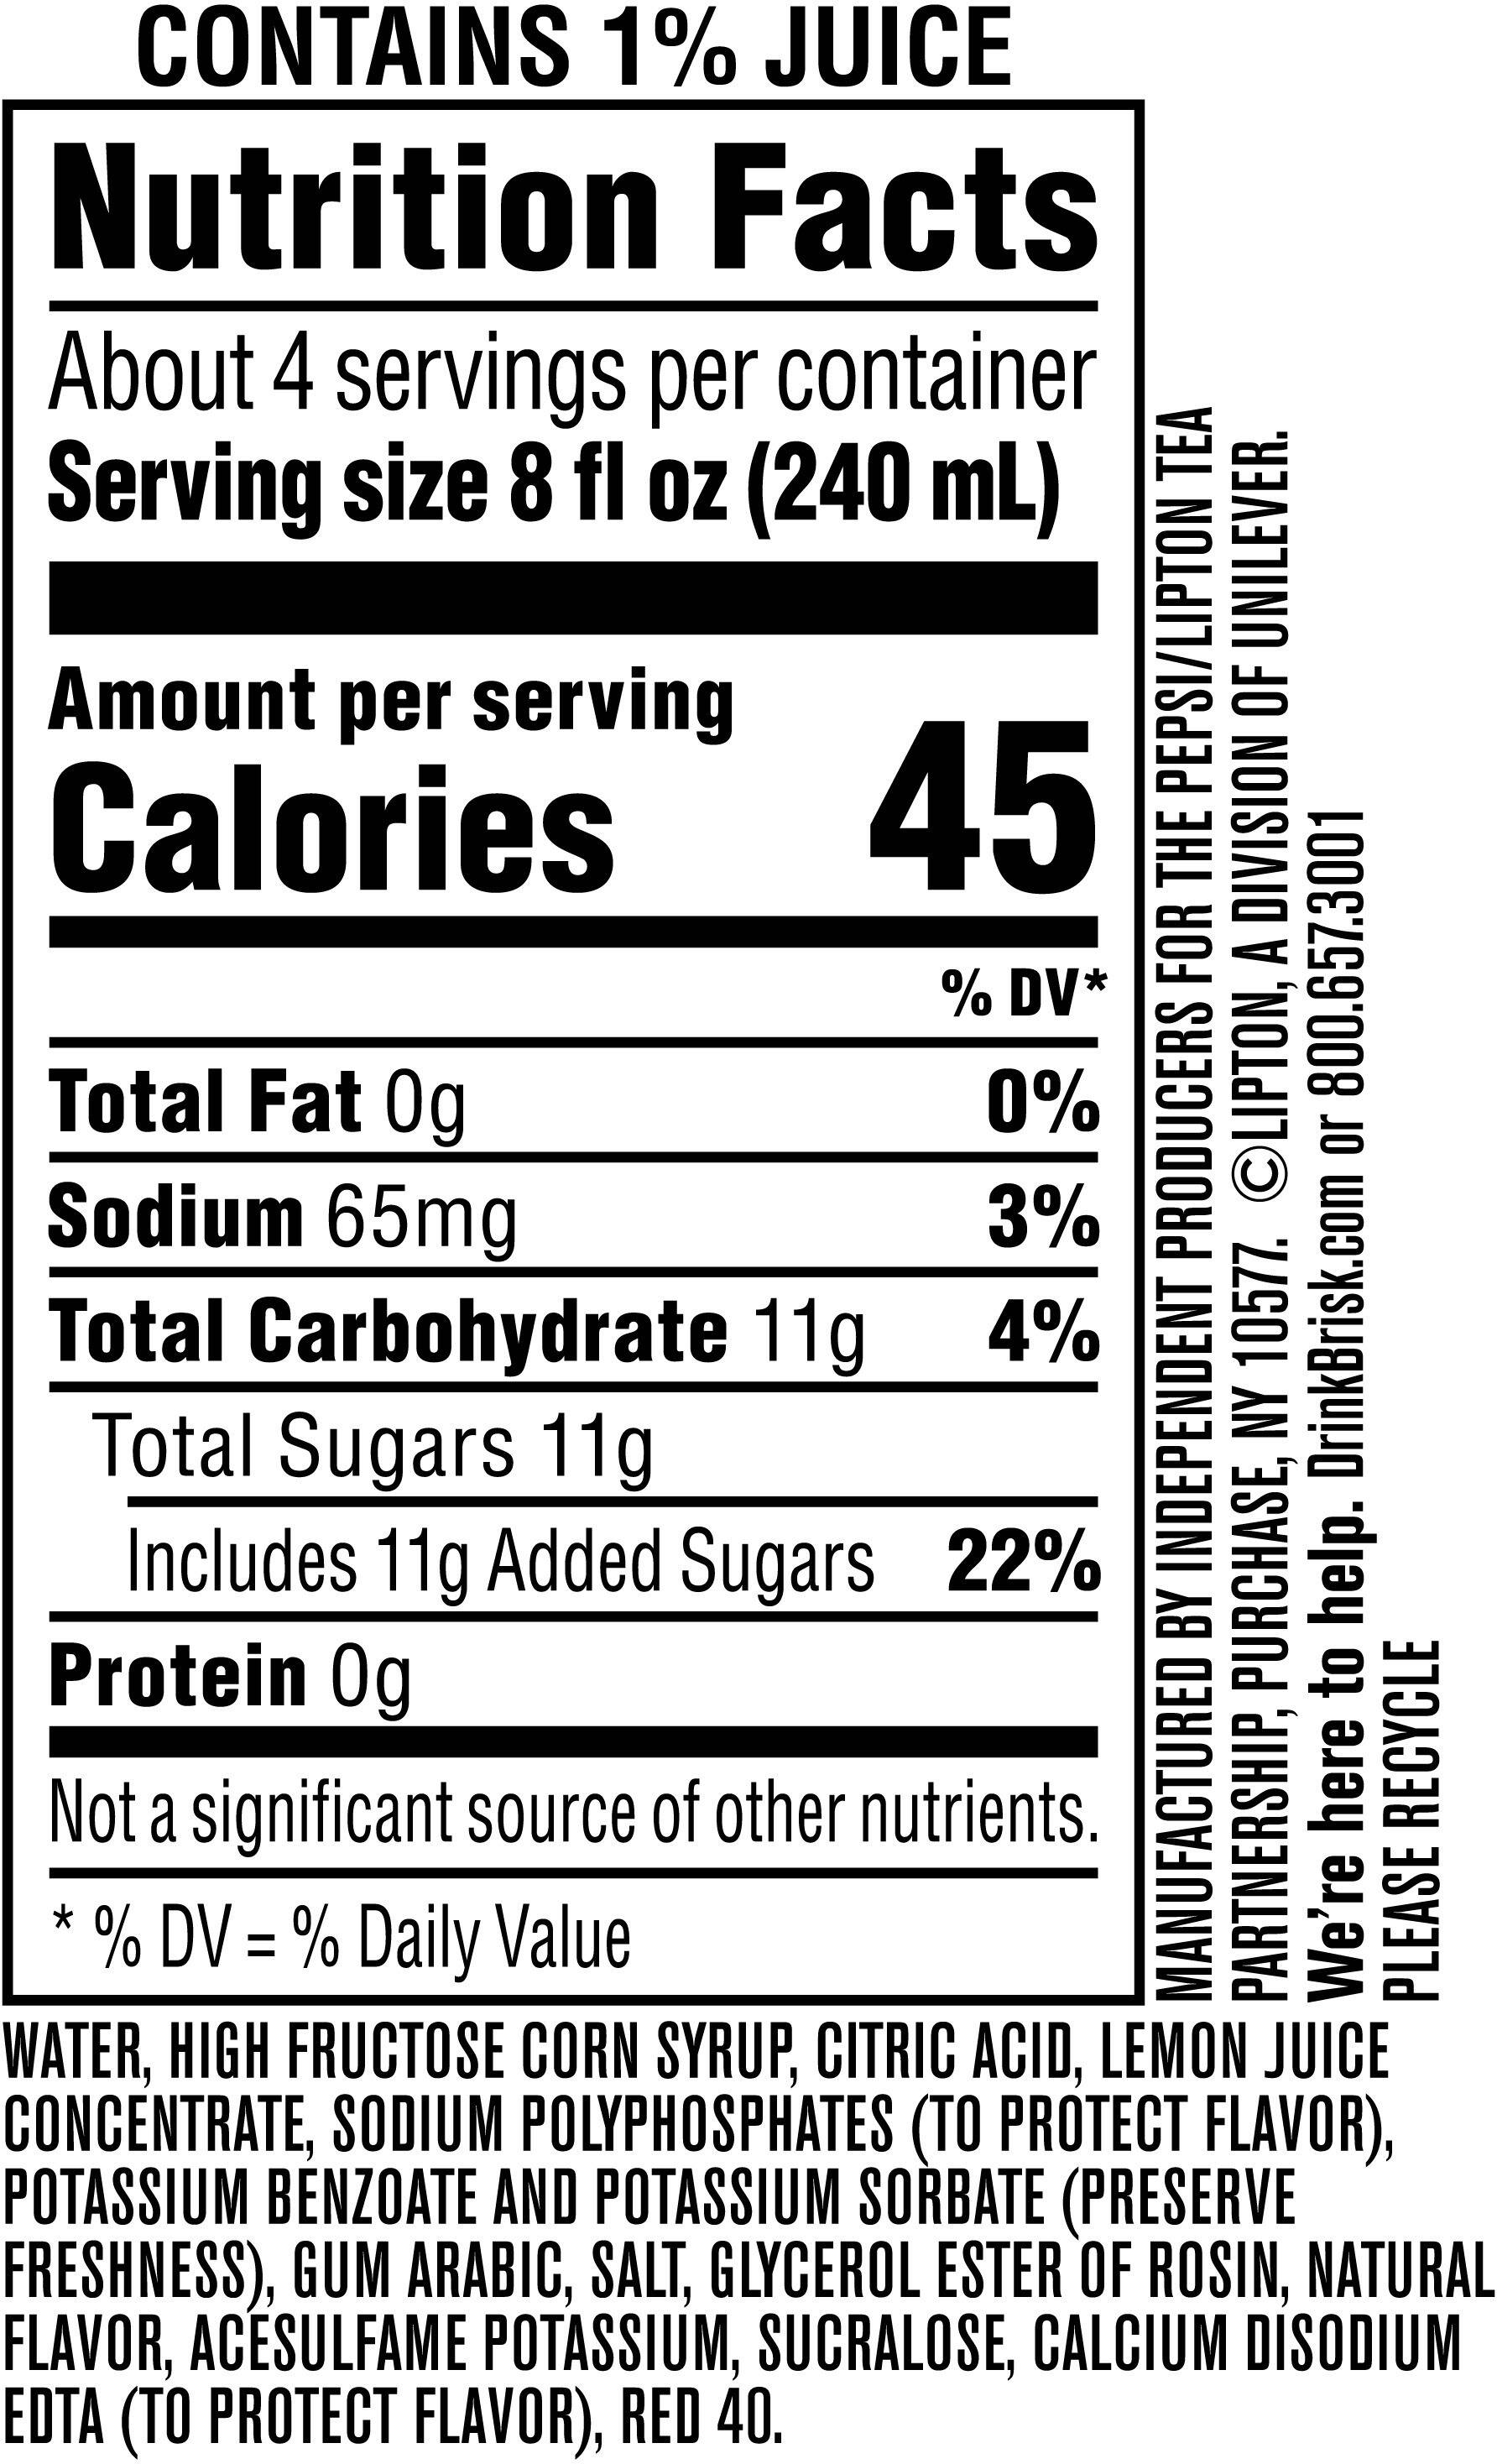 Image describing nutrition information for product Brisk Pink Lemonade